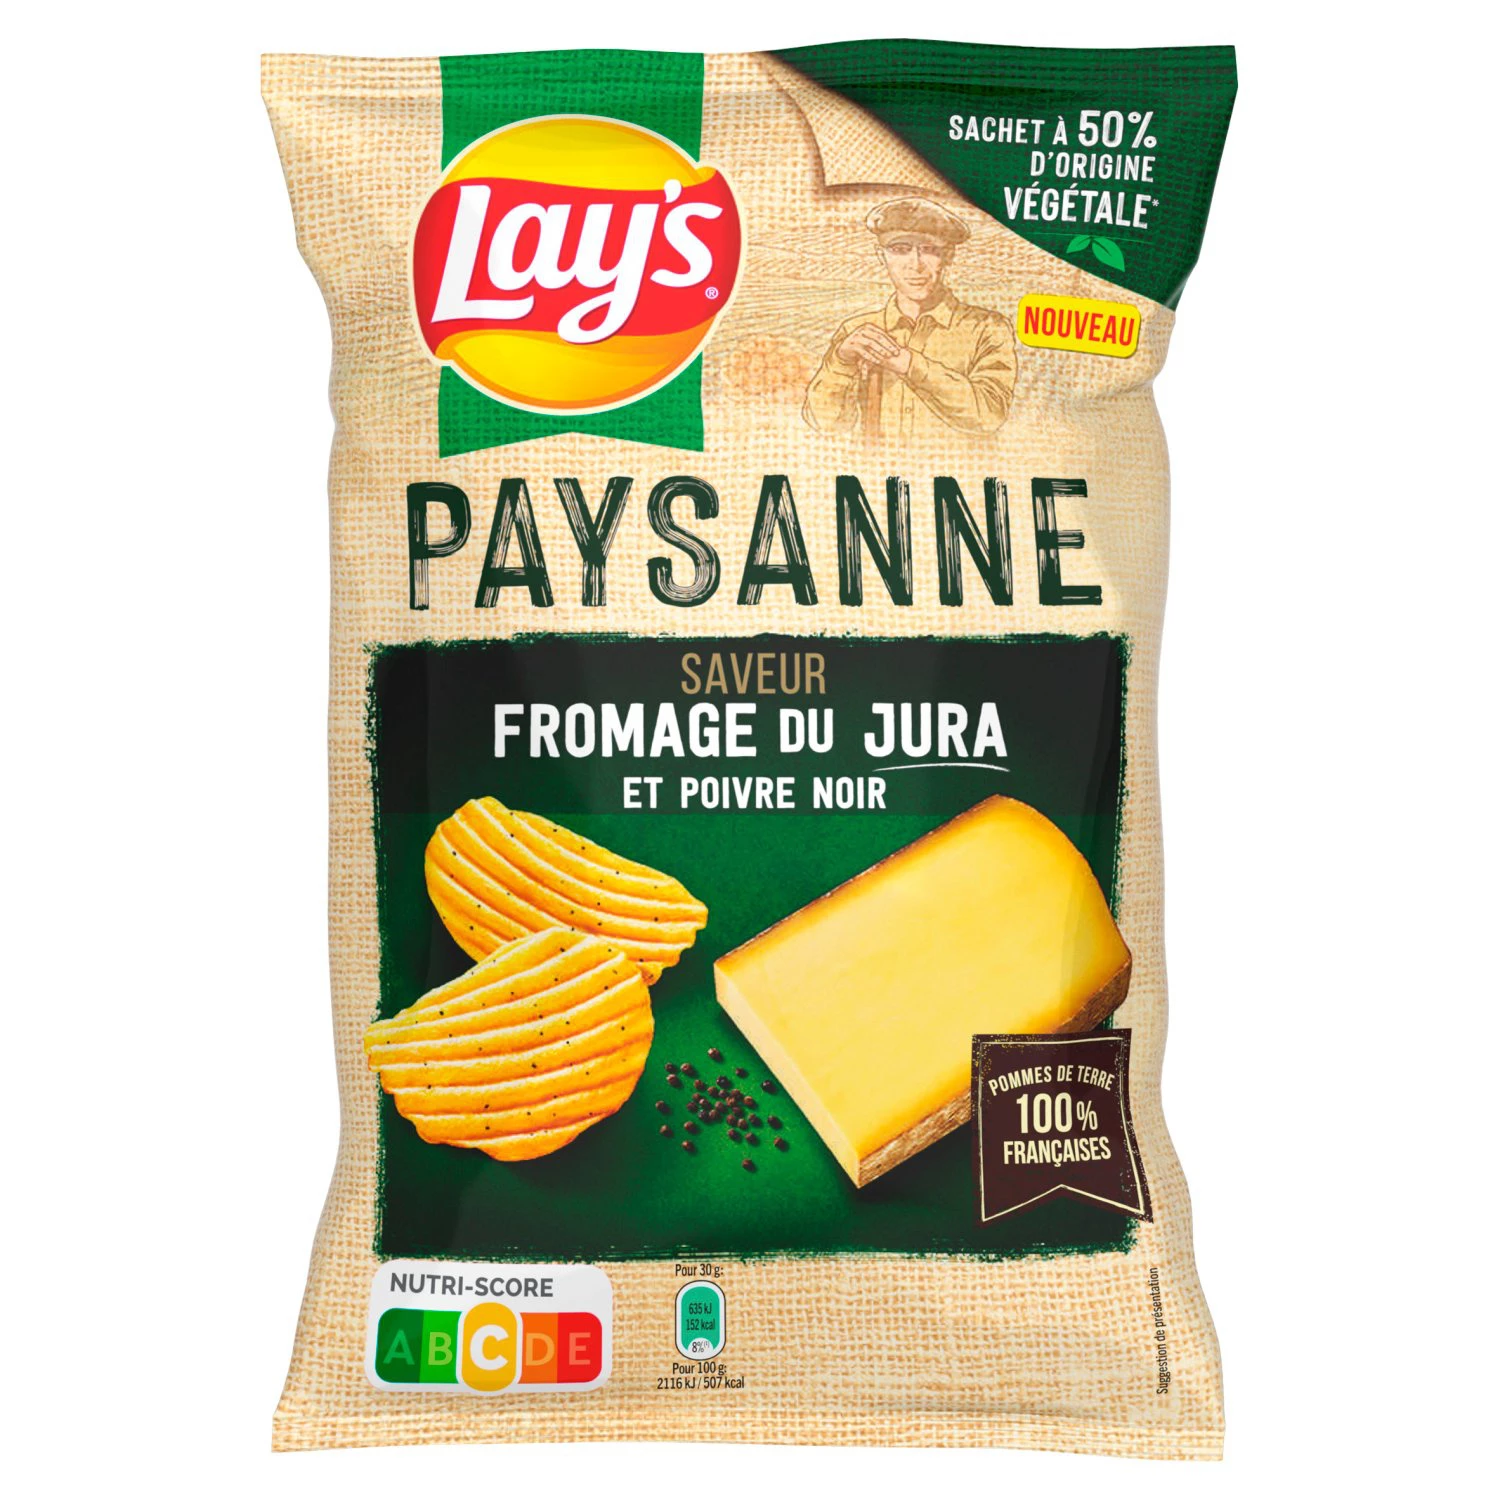 Chips Bauernrezept Jurakäse und schwarzer Pfeffergeschmack, 120g - LAY'S